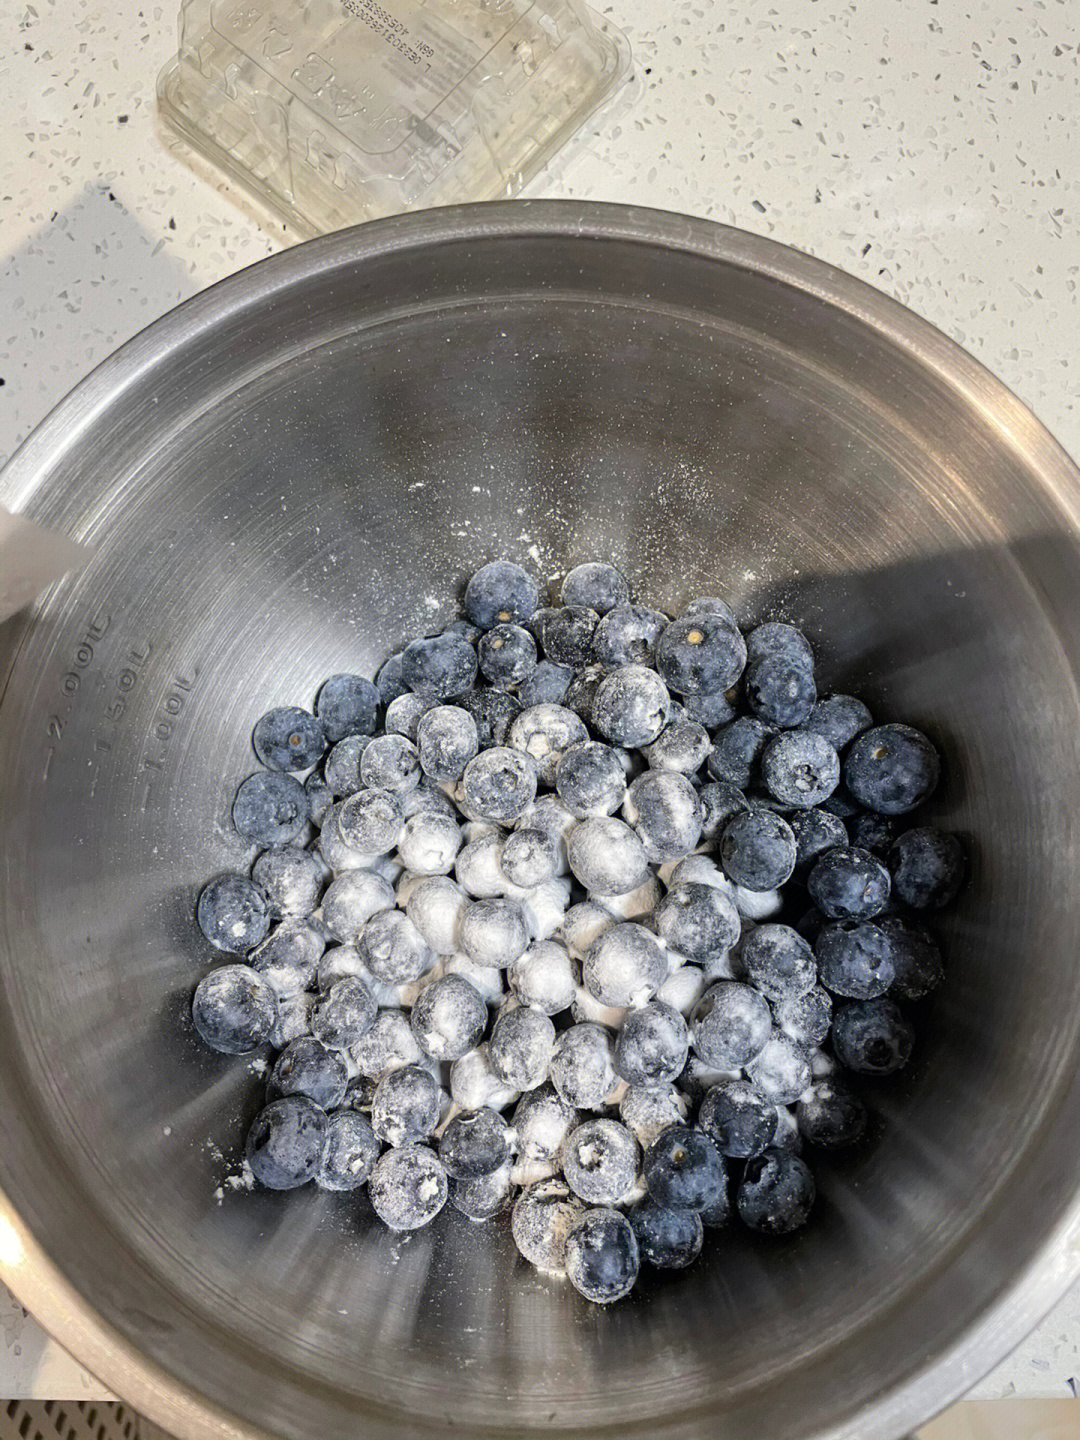 家庭蓝莓酱的制作方法图片